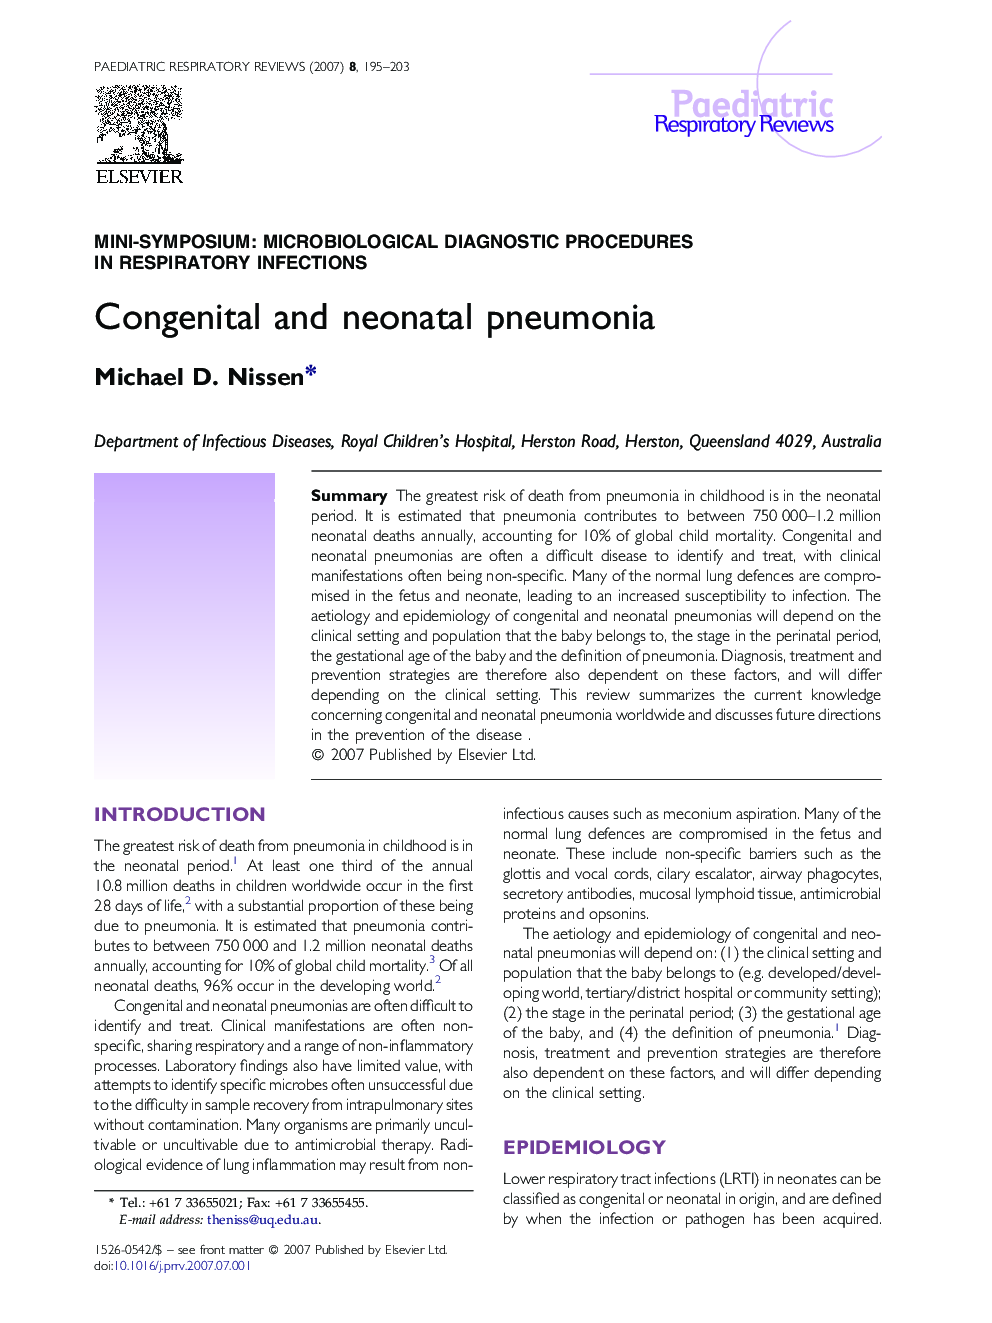 Congenital and neonatal pneumonia